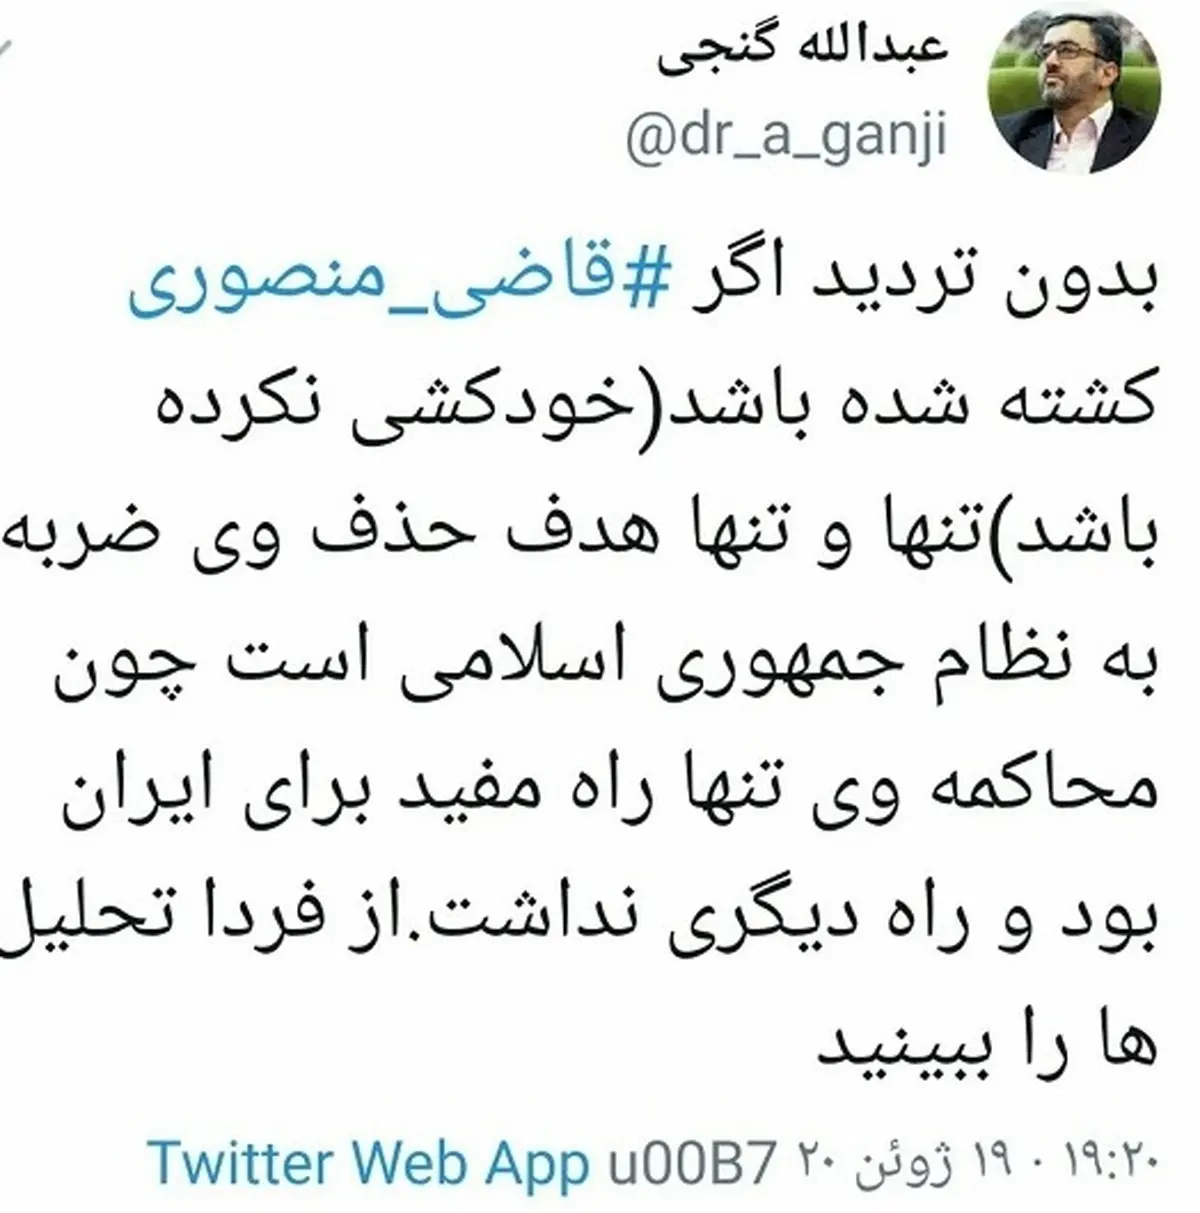   گنجی | واکنش عبدالله گنجی به مرگ قاضی غلامرضا منصوری 